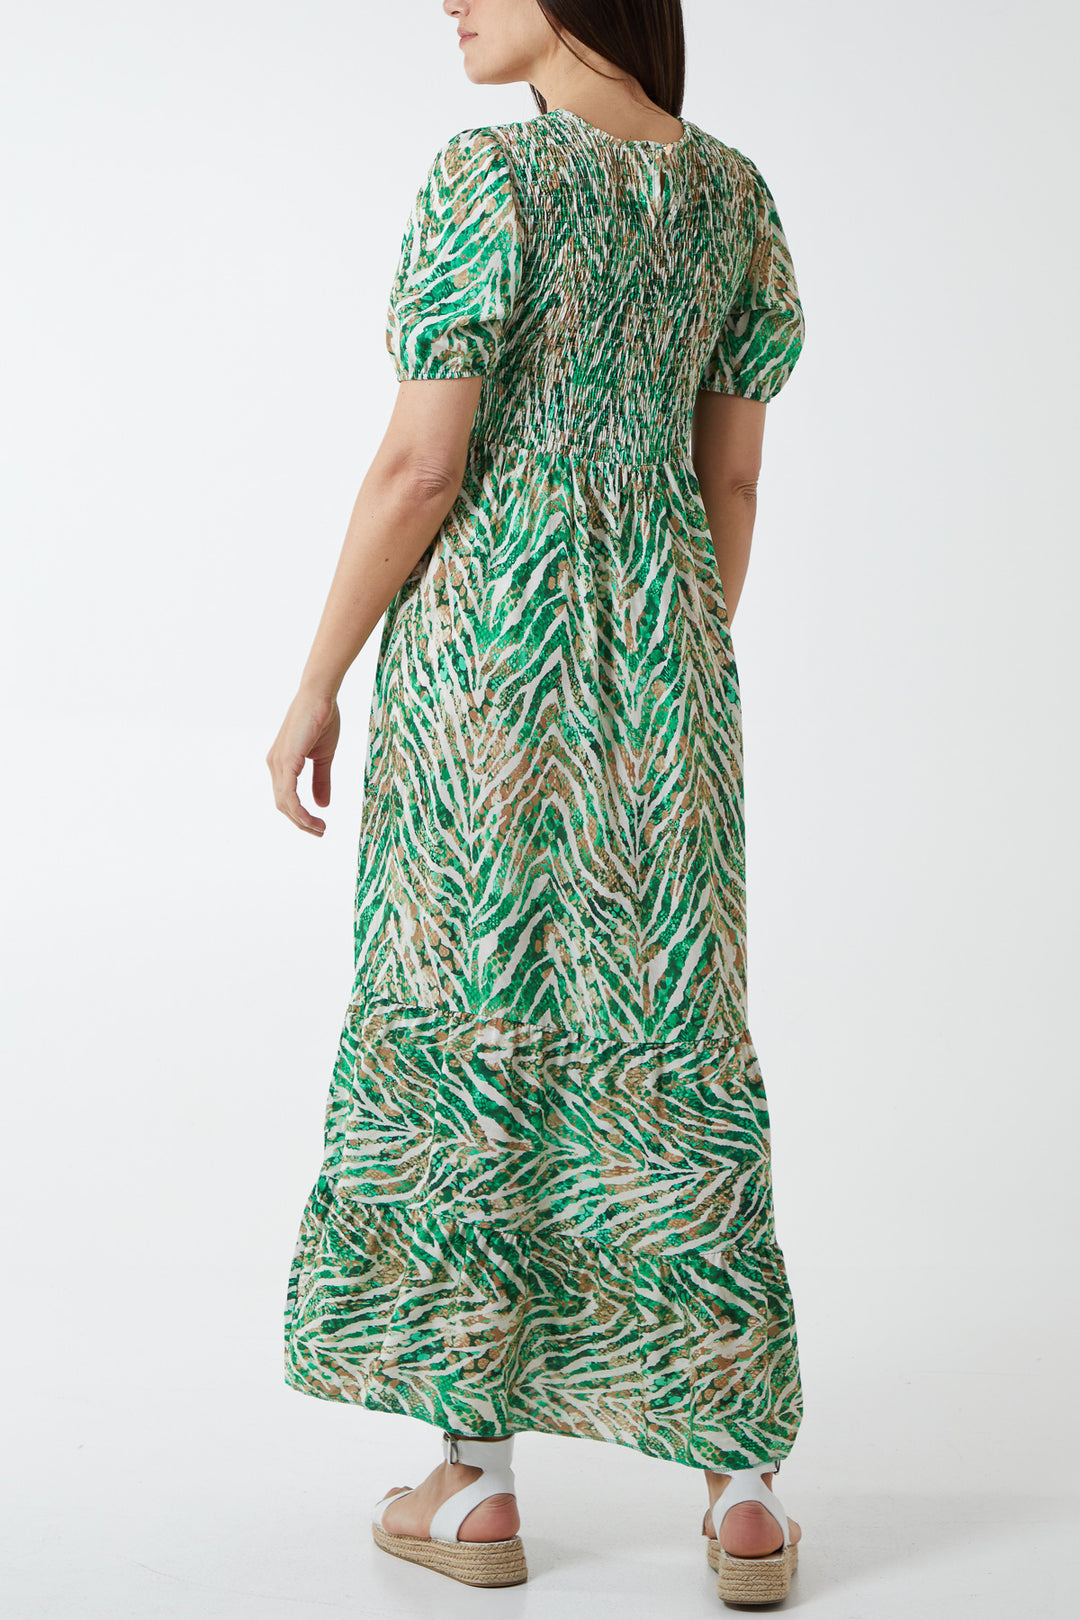 Oma Abstract Animal Shirred Maxi Dress - Green